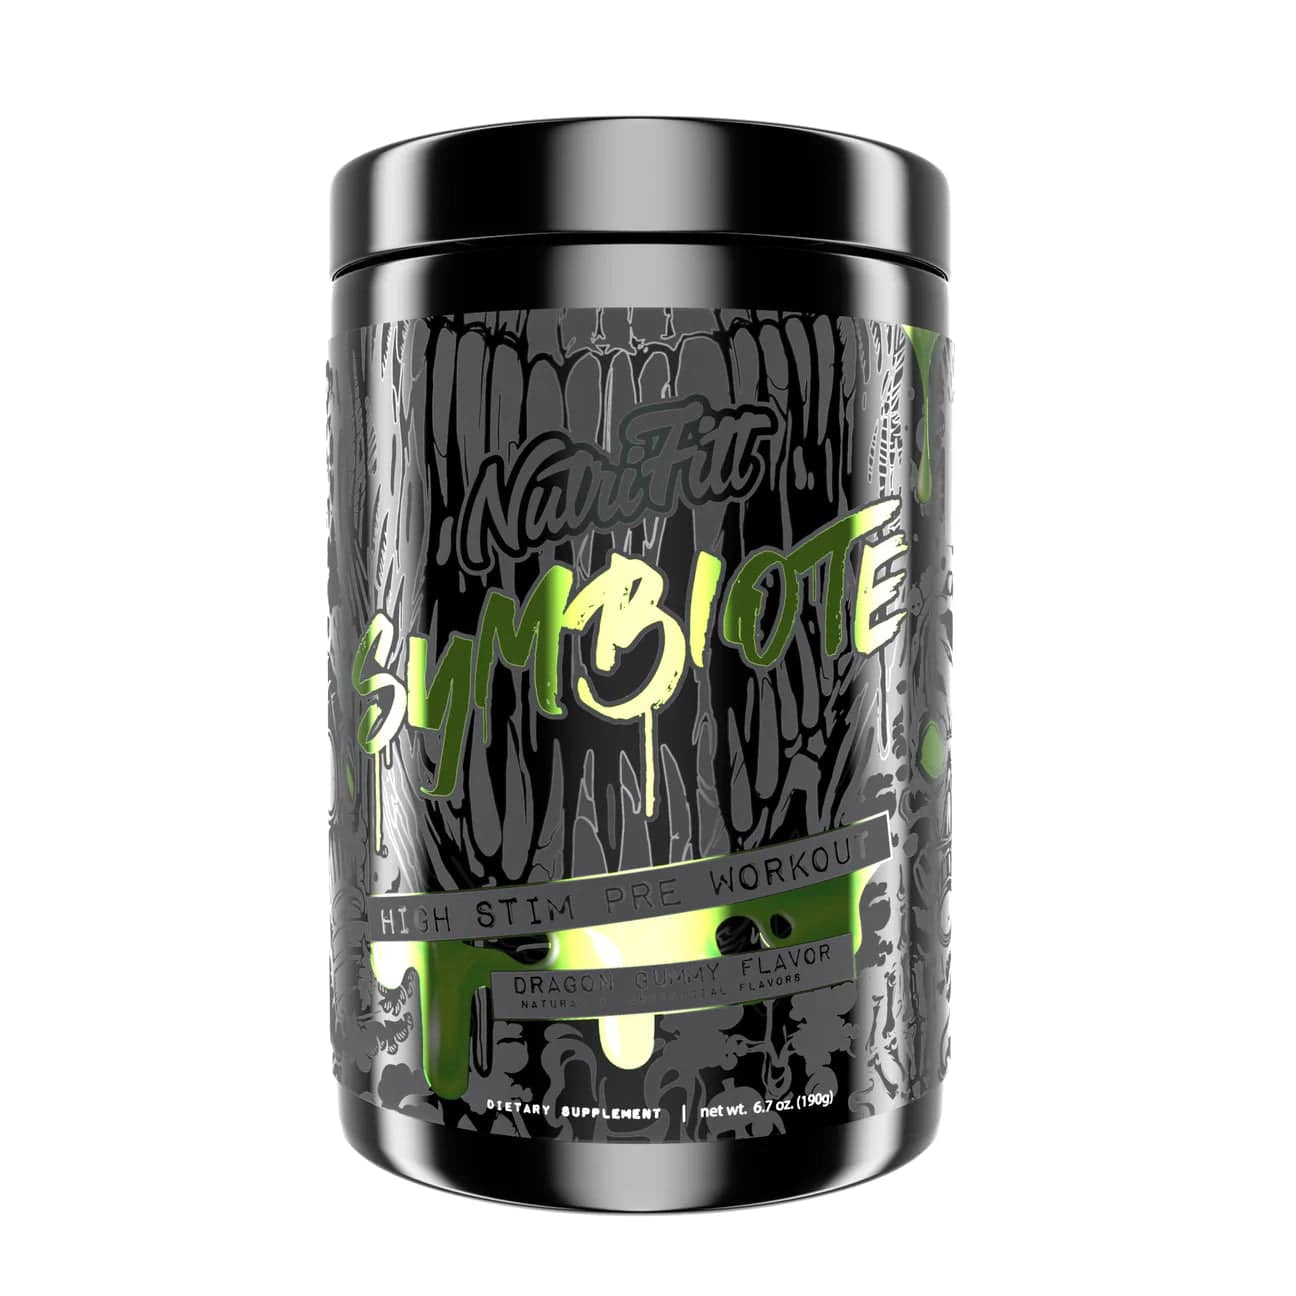 NutriFitt Symbiote - Bemoxie Supplements